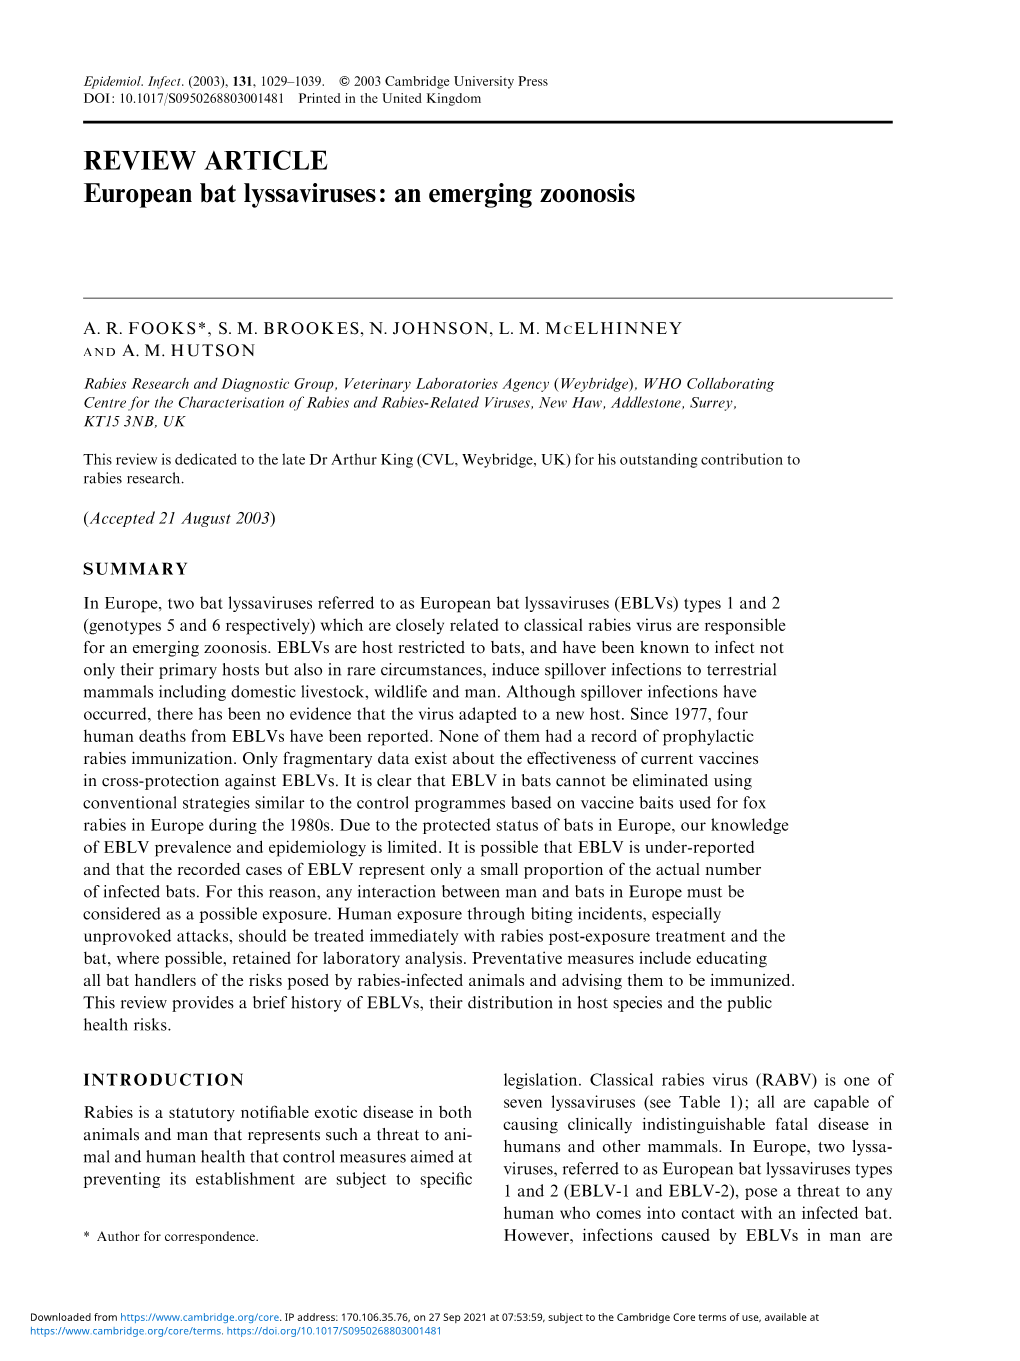 European Bat Lyssaviruses: an Emerging Zoonosis